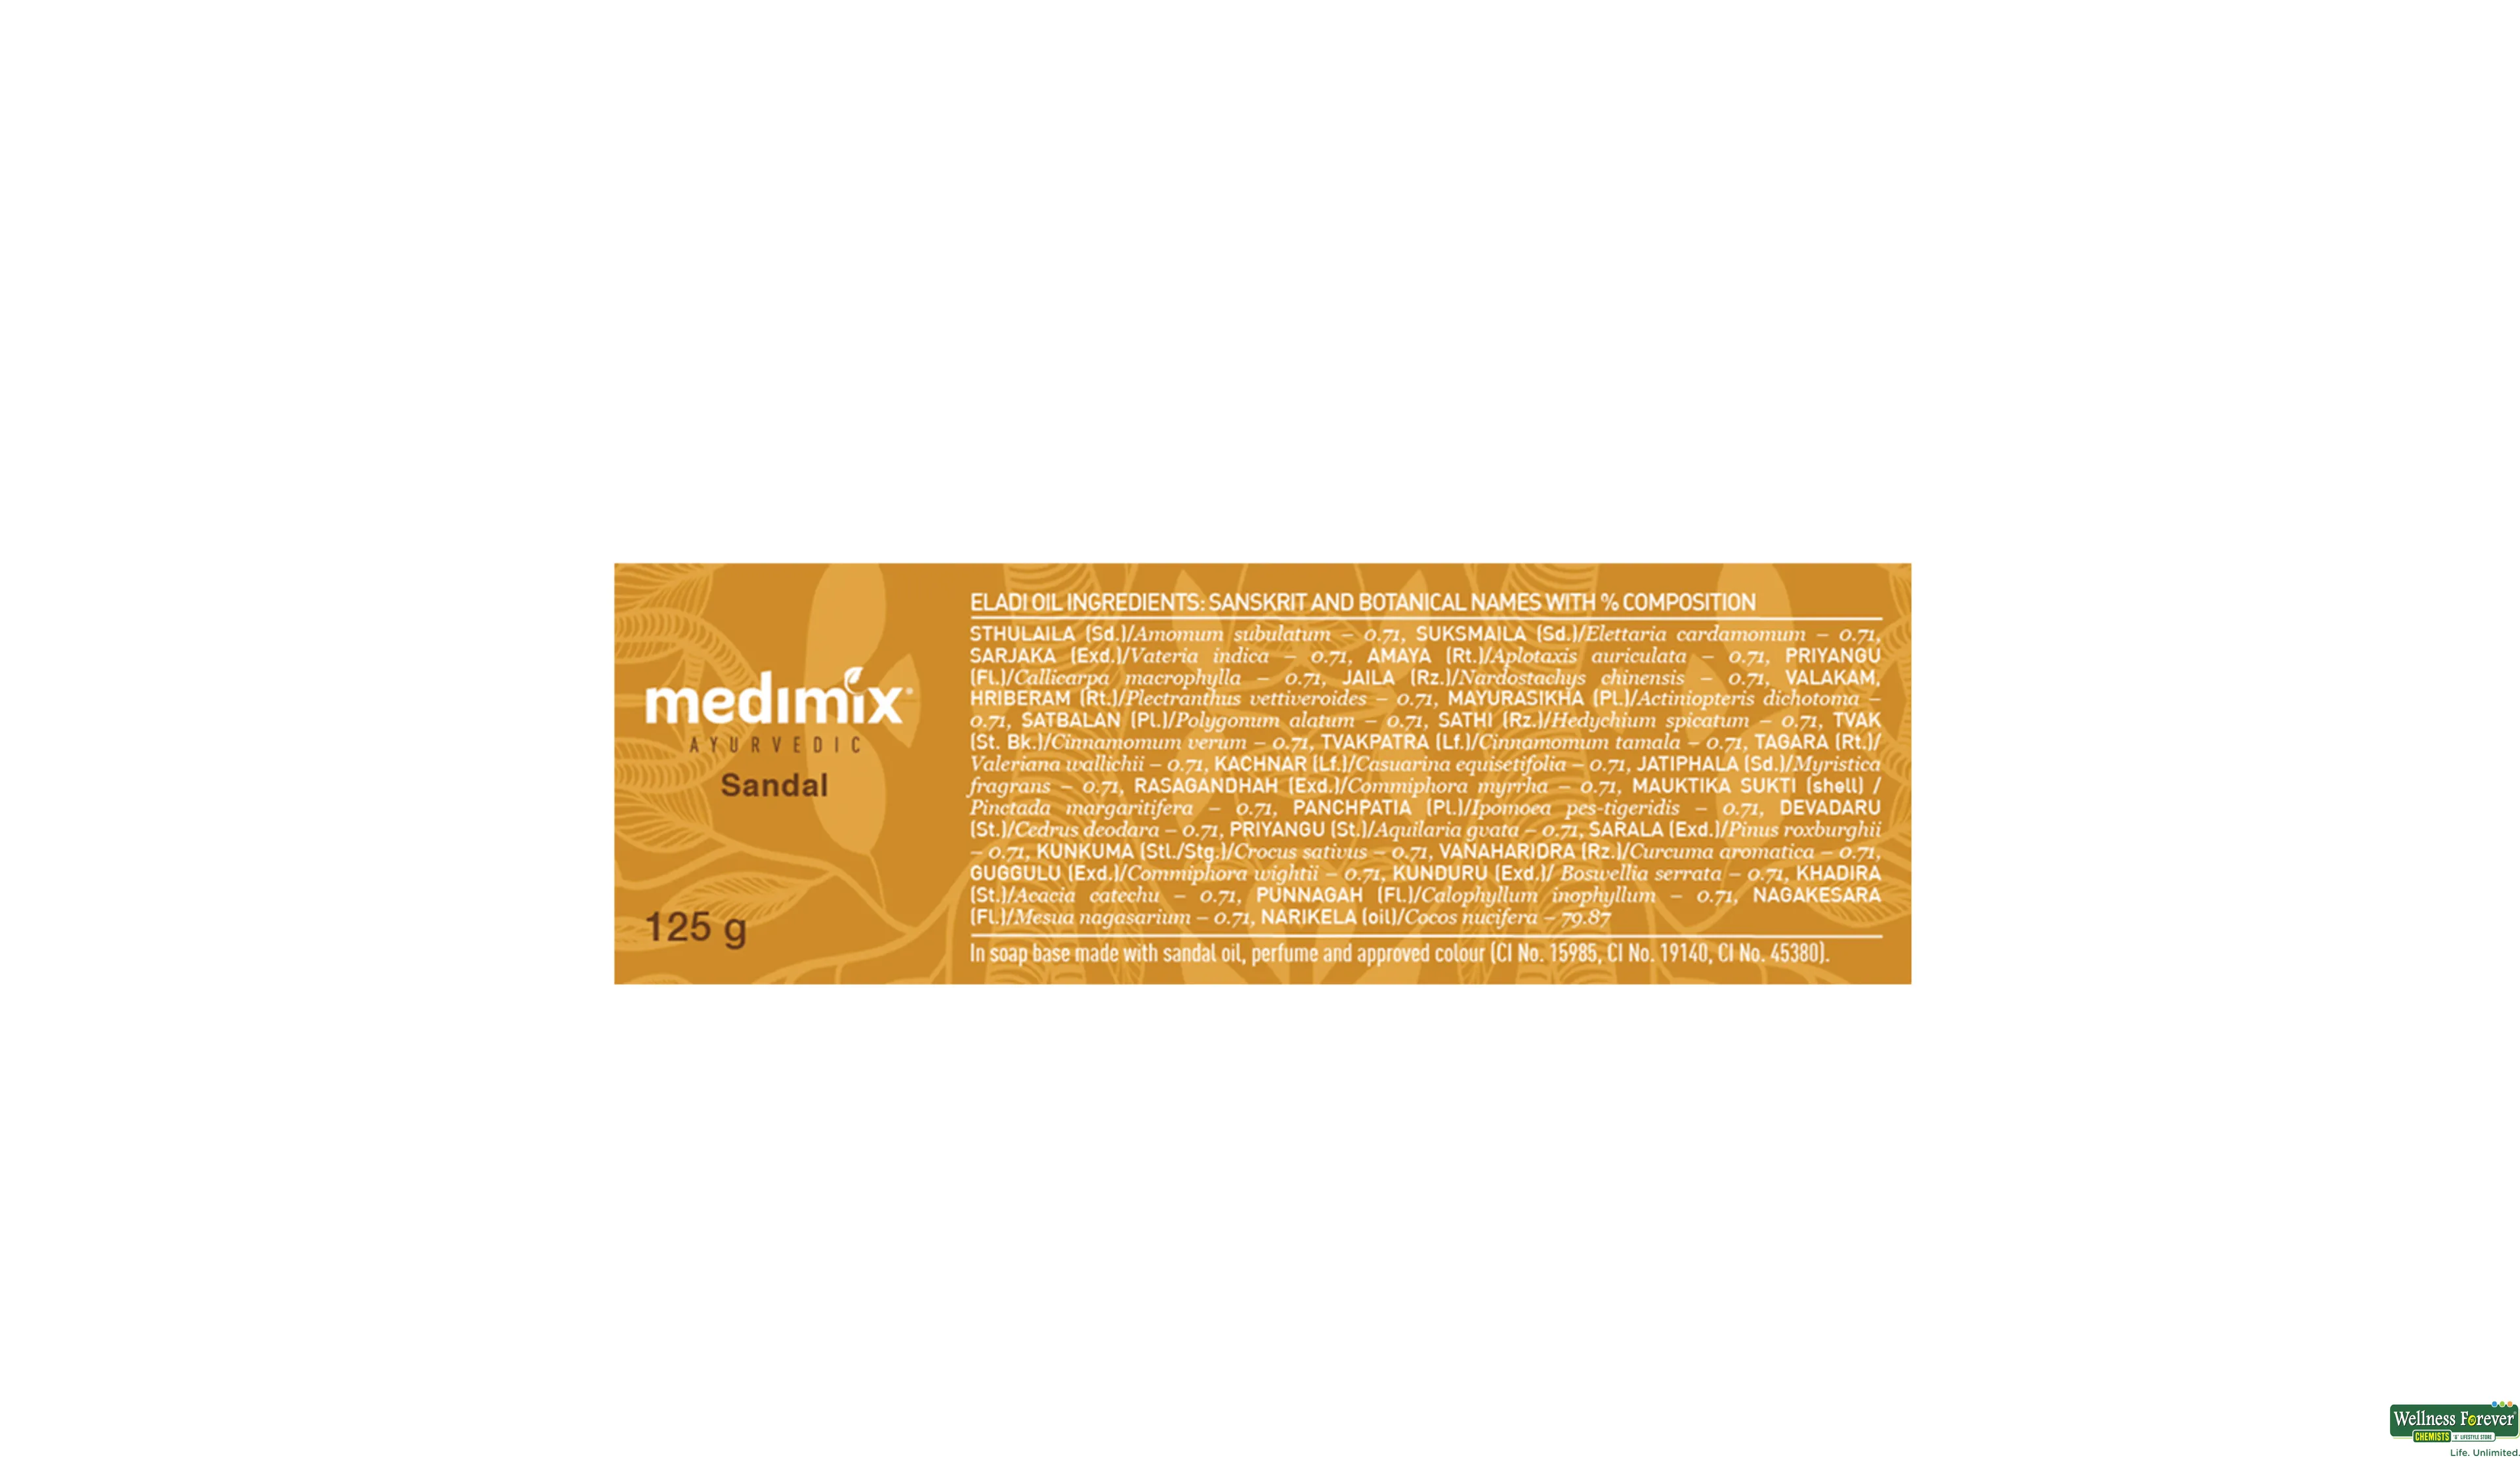 MEDIMIX SOAP SANDAL 125GM- 3, 125GM, 